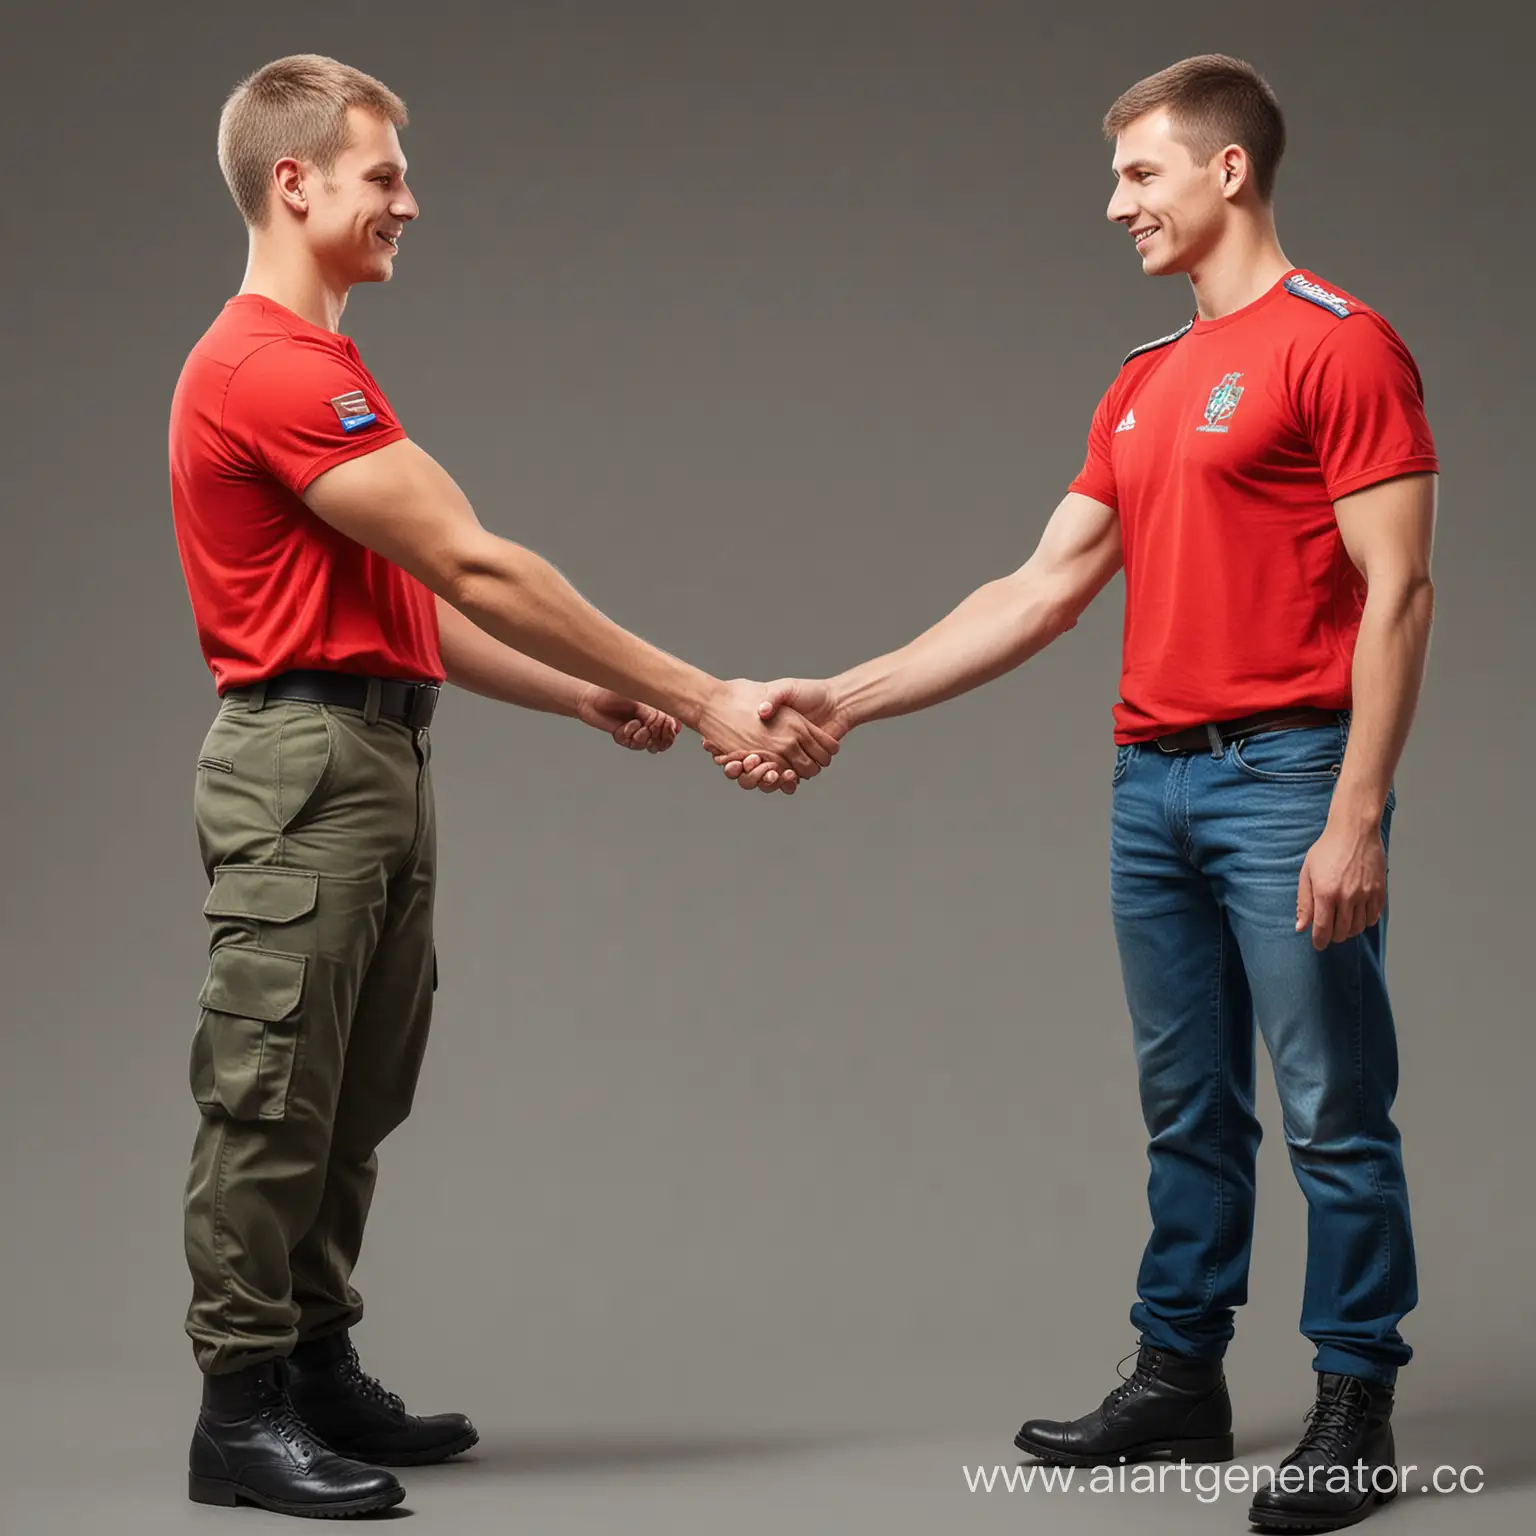 Нарисуй военного армии России, который пожимает руку Гражданскому человеку в красной футболке, сделай так, чтобы было видно лица, люди изображены с головы по пояс